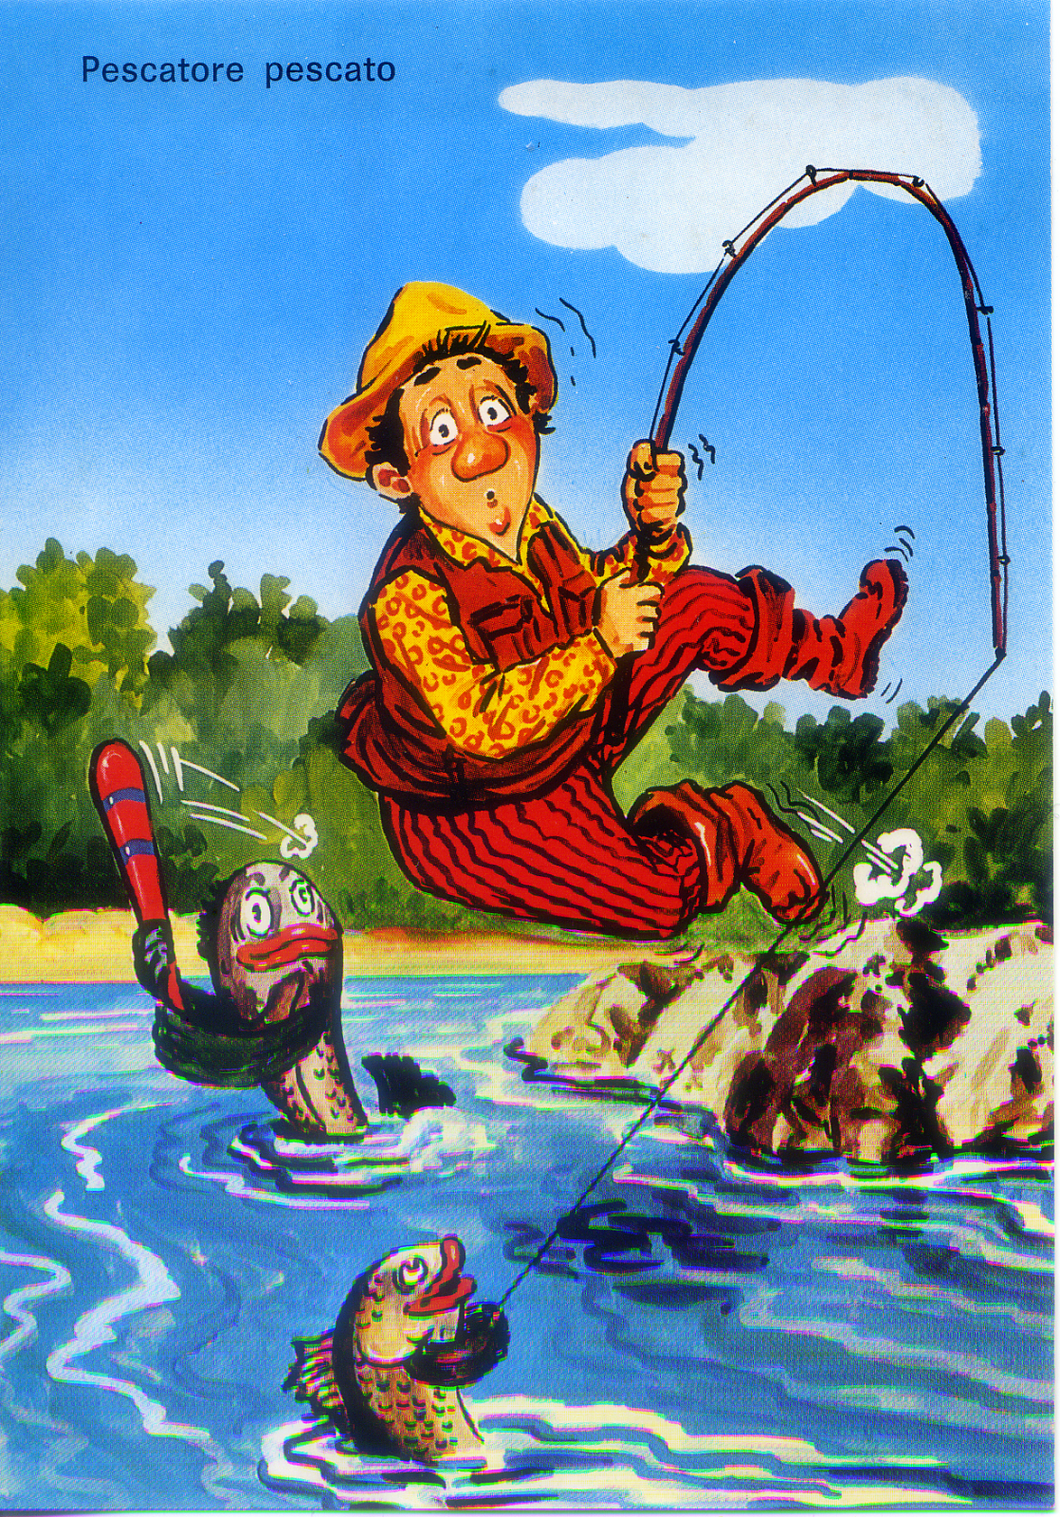 Cartolina Umoristica sulla Pesca - Kina Italia Milano (3) - Pescatore Pescato